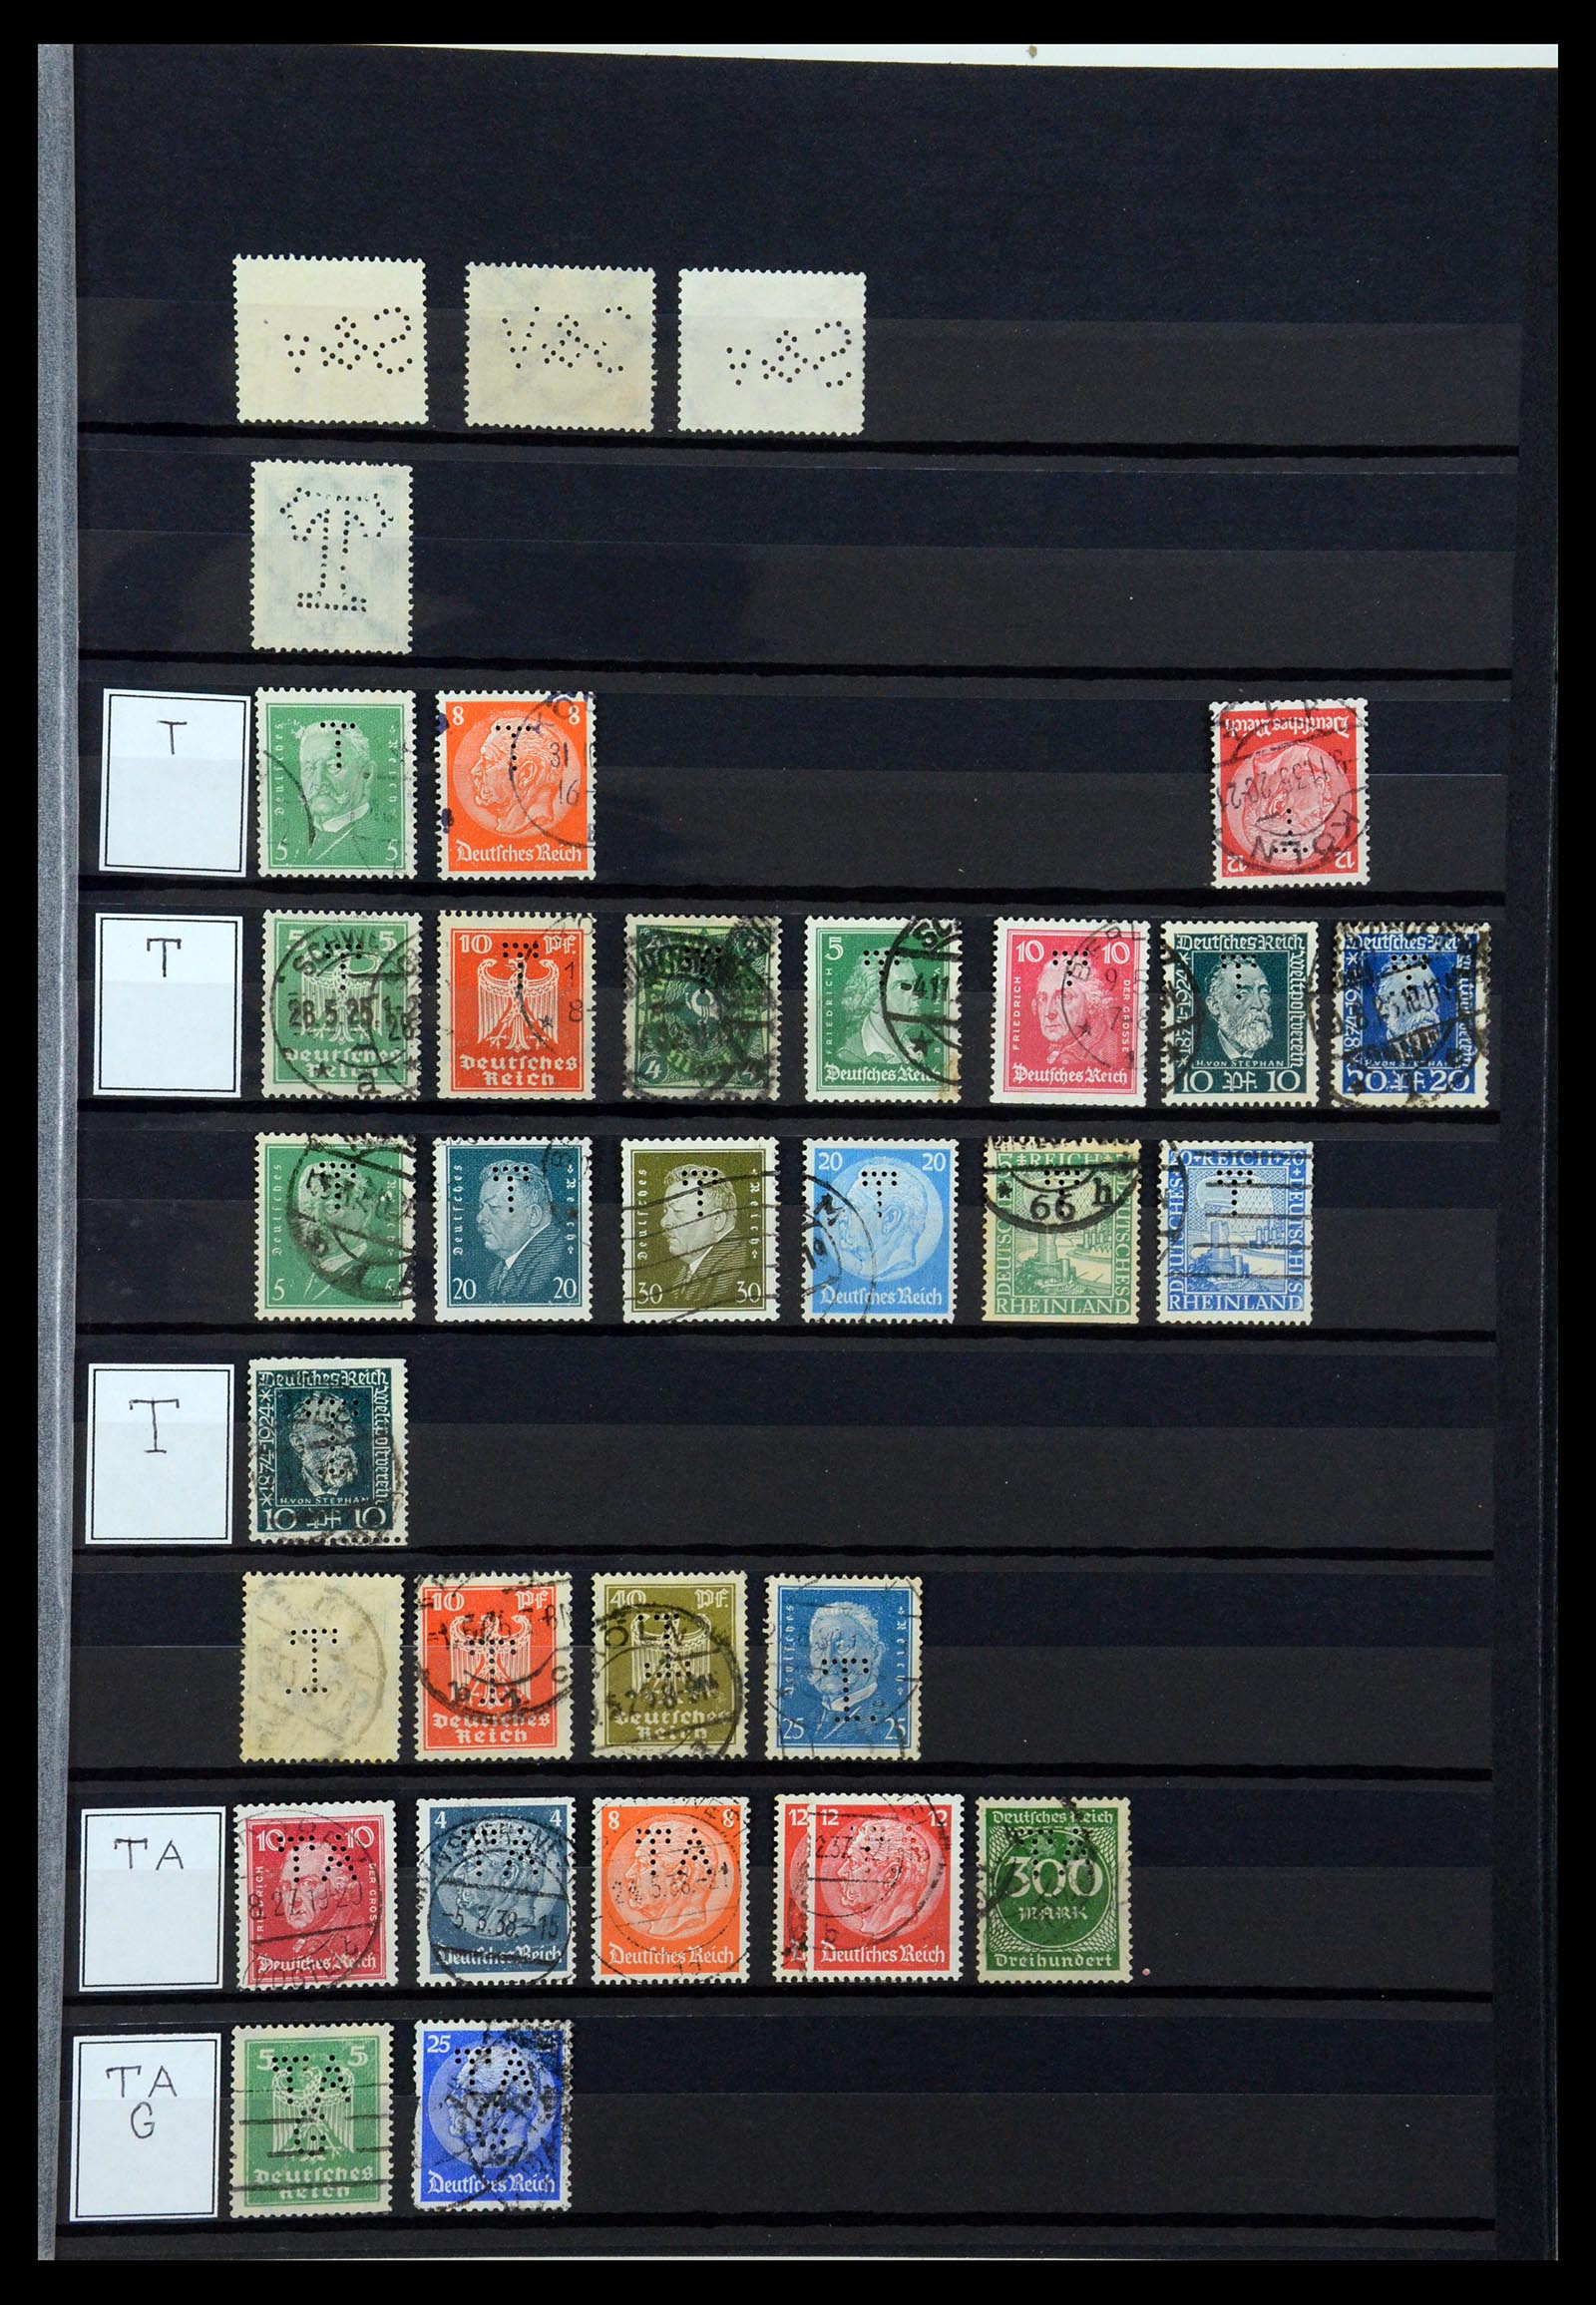 36405 309 - Stamp collection 36405 German Reich perfins 1880-1945.